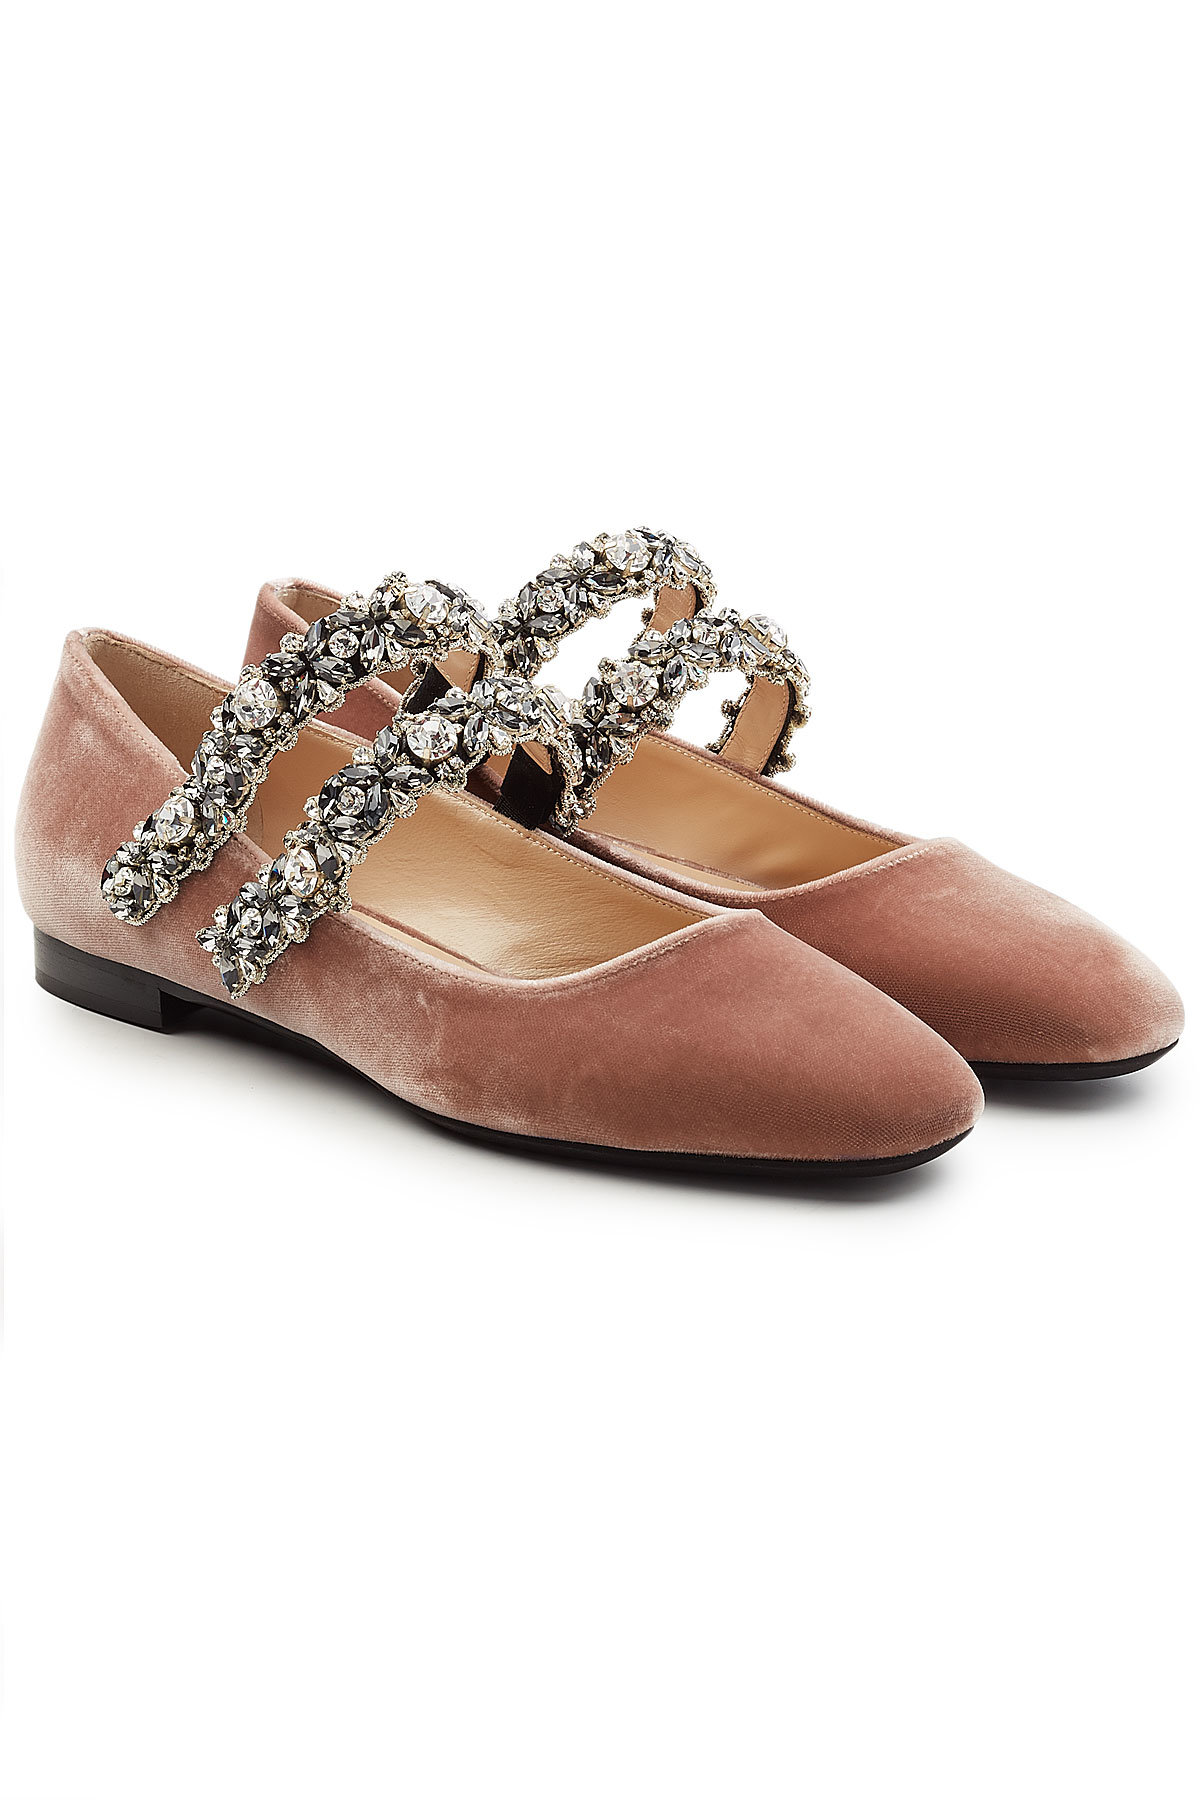 N°21 - Velvet Shoes with Embellished Straps